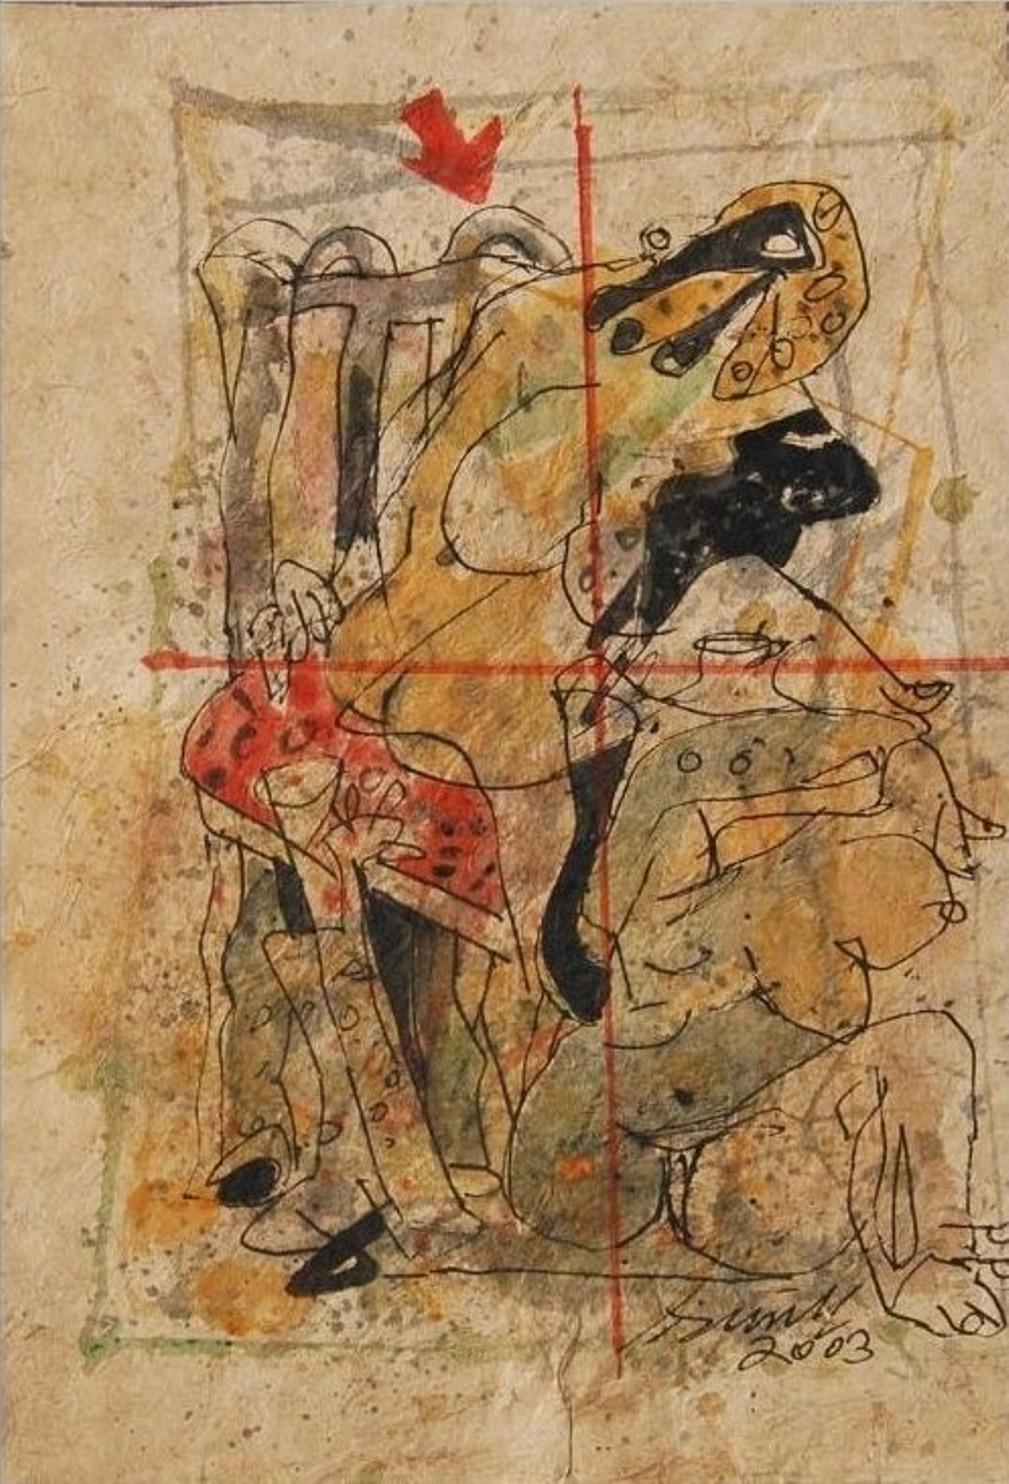 Sunil Das - Farbbasierte Zeichnungen, 
13 x 9,5 Zoll (ungerahmte Größen)
Acryl, Aquarell, Feder und Tinte auf handgeschöpftem Papier, 2003
( Ungerahmt & Geliefert )

Sunil Das (1939-2015) war ein moderner indischer Meisterkünstler aus Bengalen.